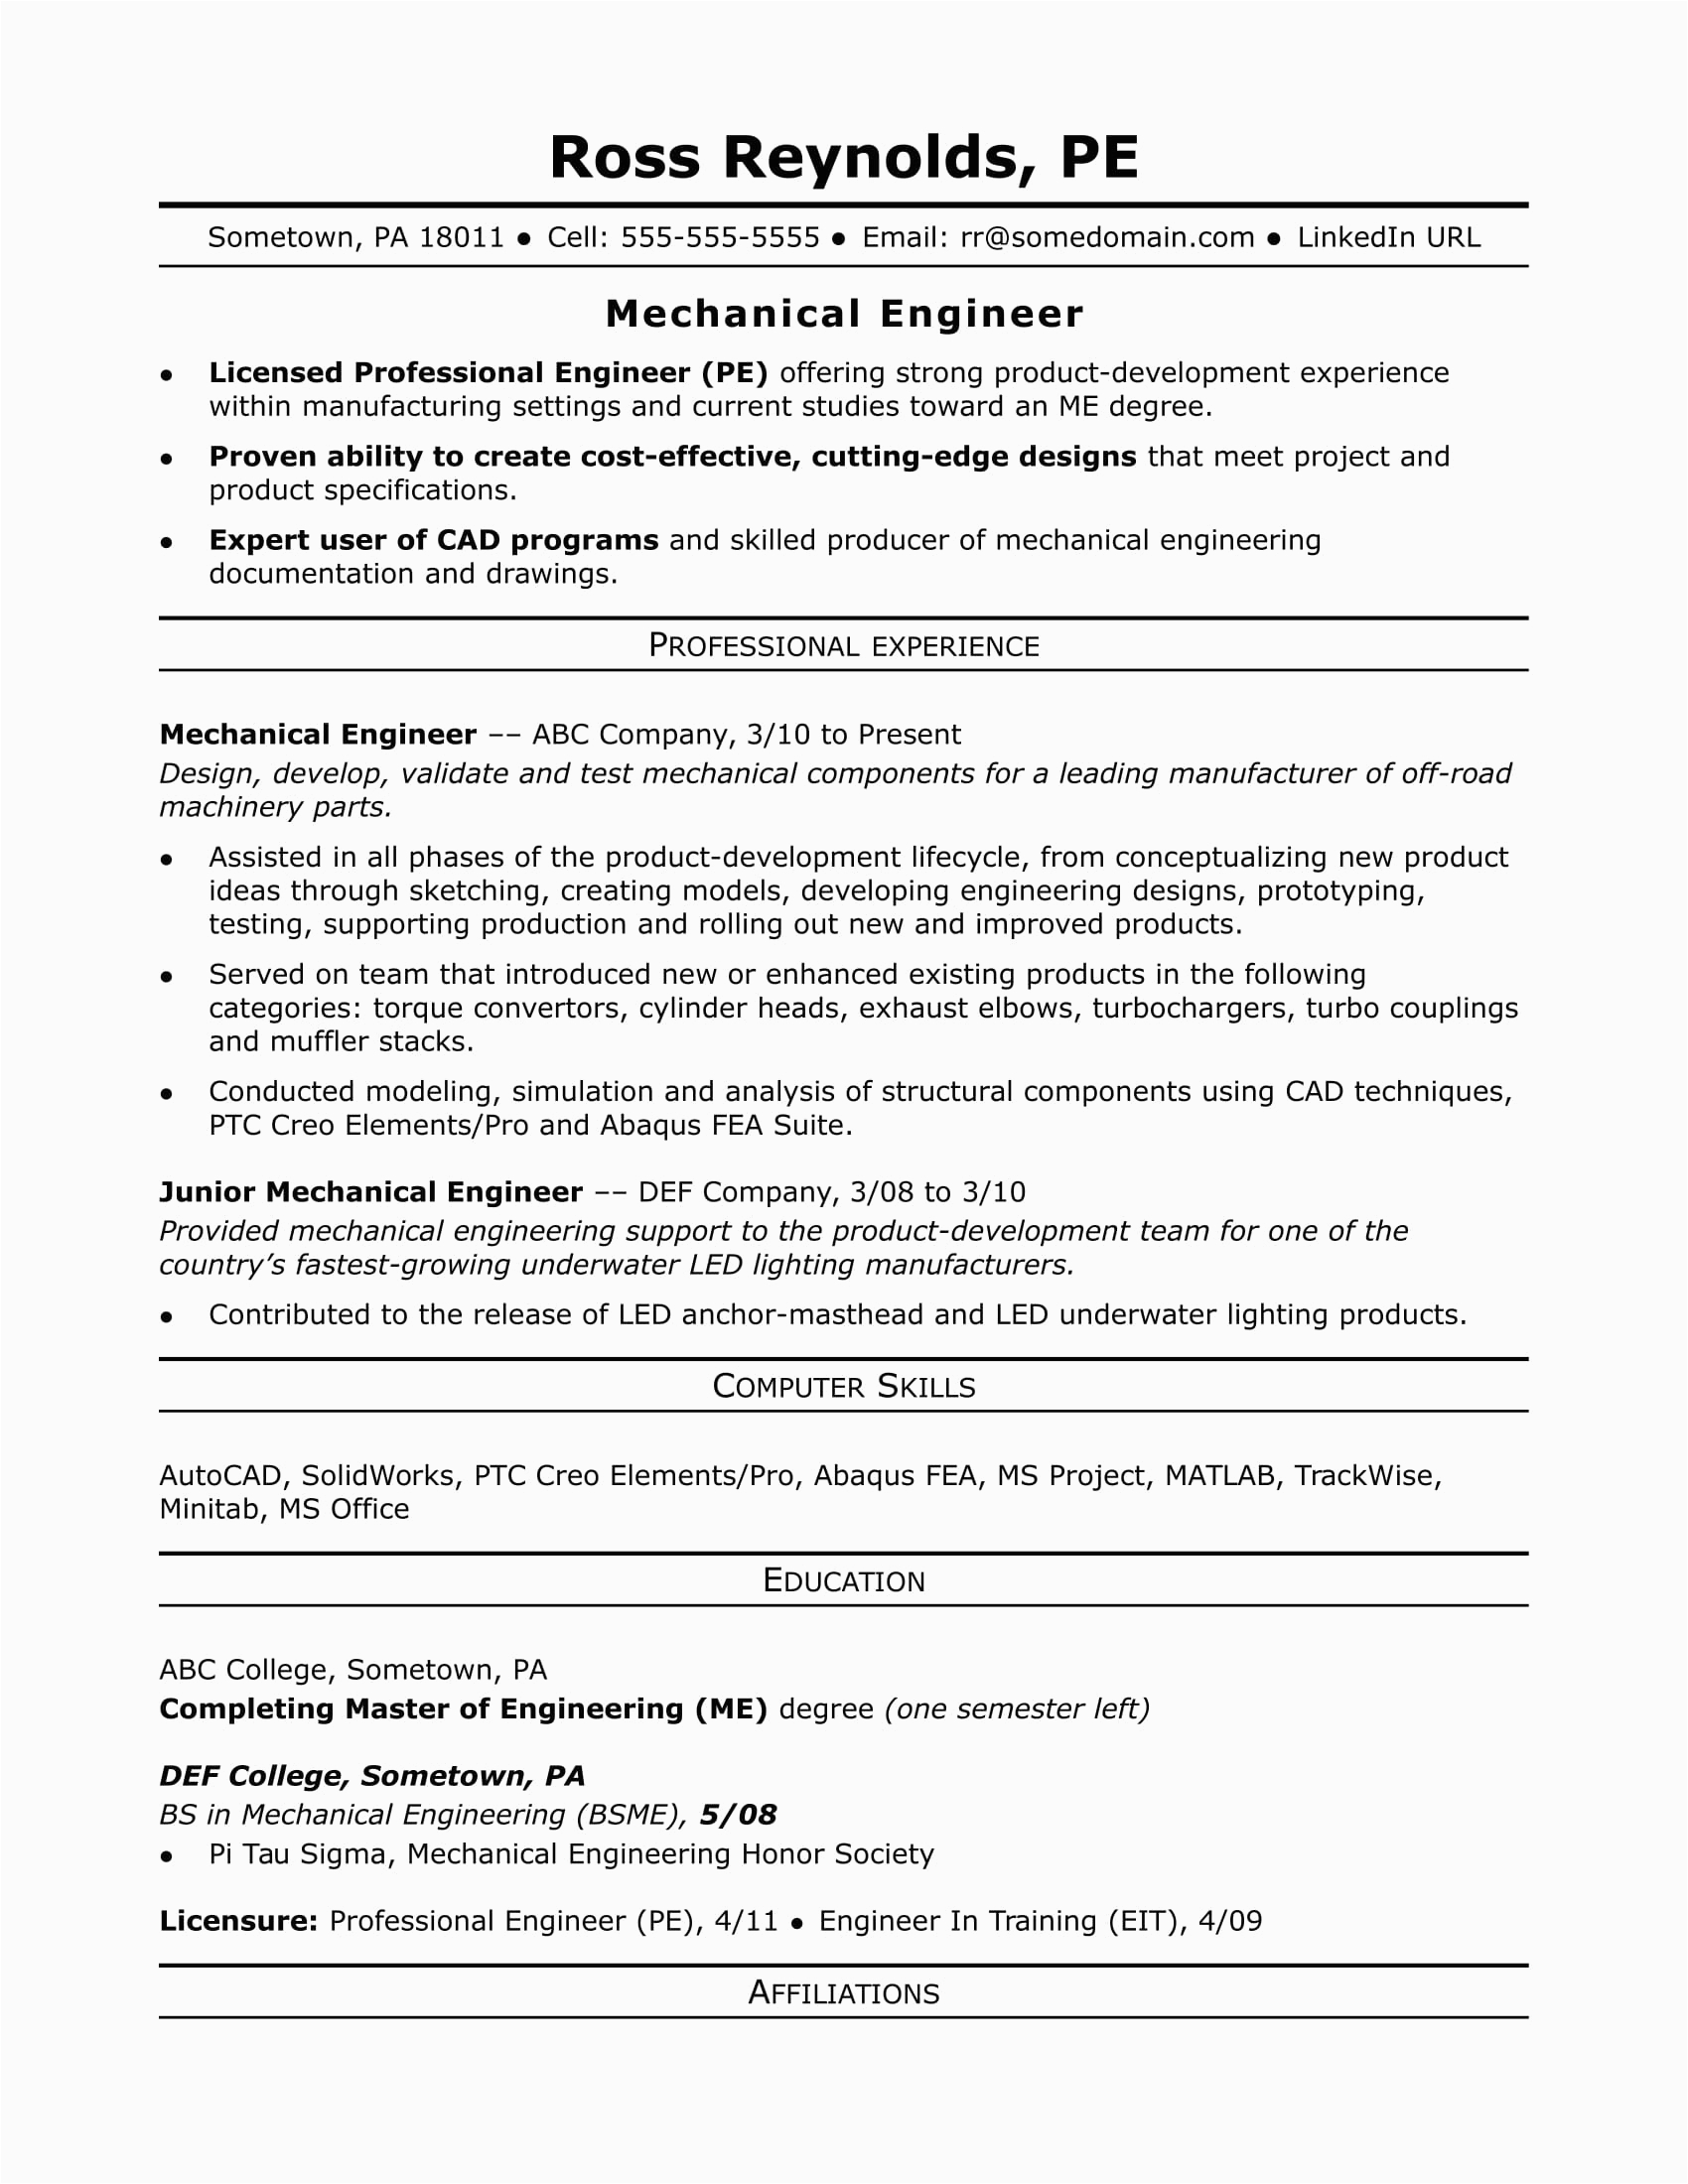 Mechanical Engineering Work Experience Resume Sample Sample Resume for A Midlevel Mechanical Engineer